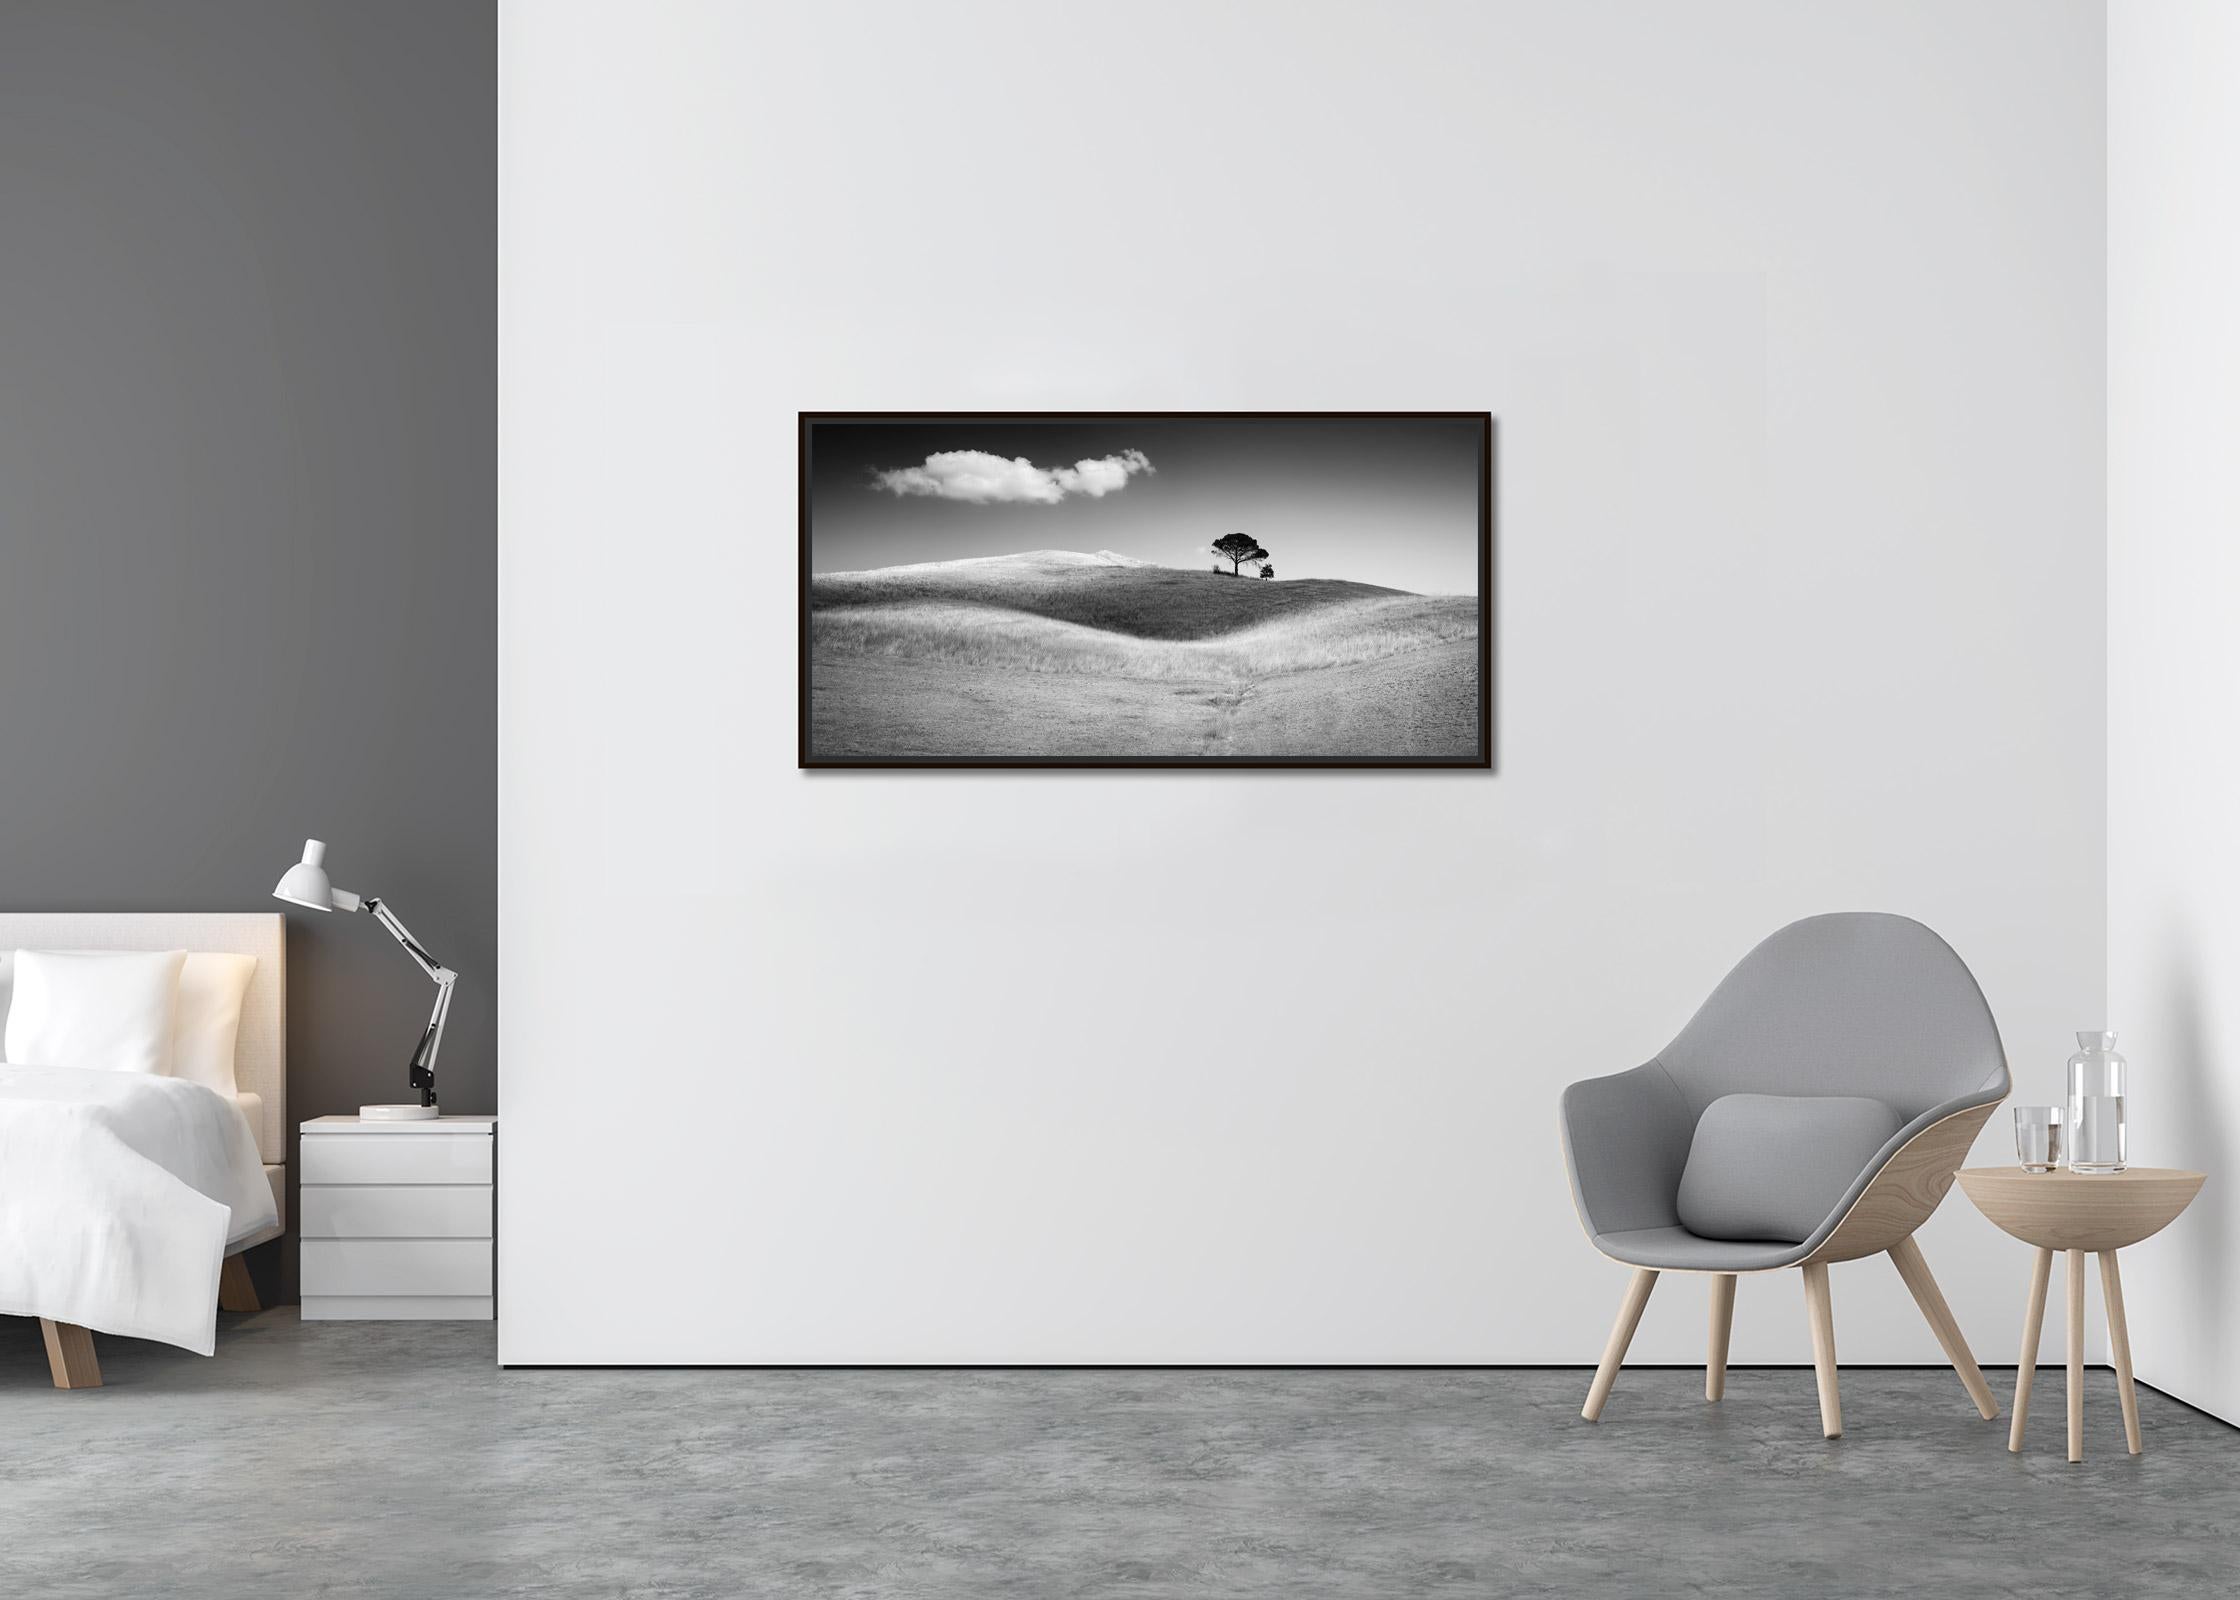 Italienische Stein Kiefernholz, Toskana, Italien, Schwarz-Weiß-Kunstfotografie, Landschaft (Zeitgenössisch), Photograph, von Gerald Berghammer